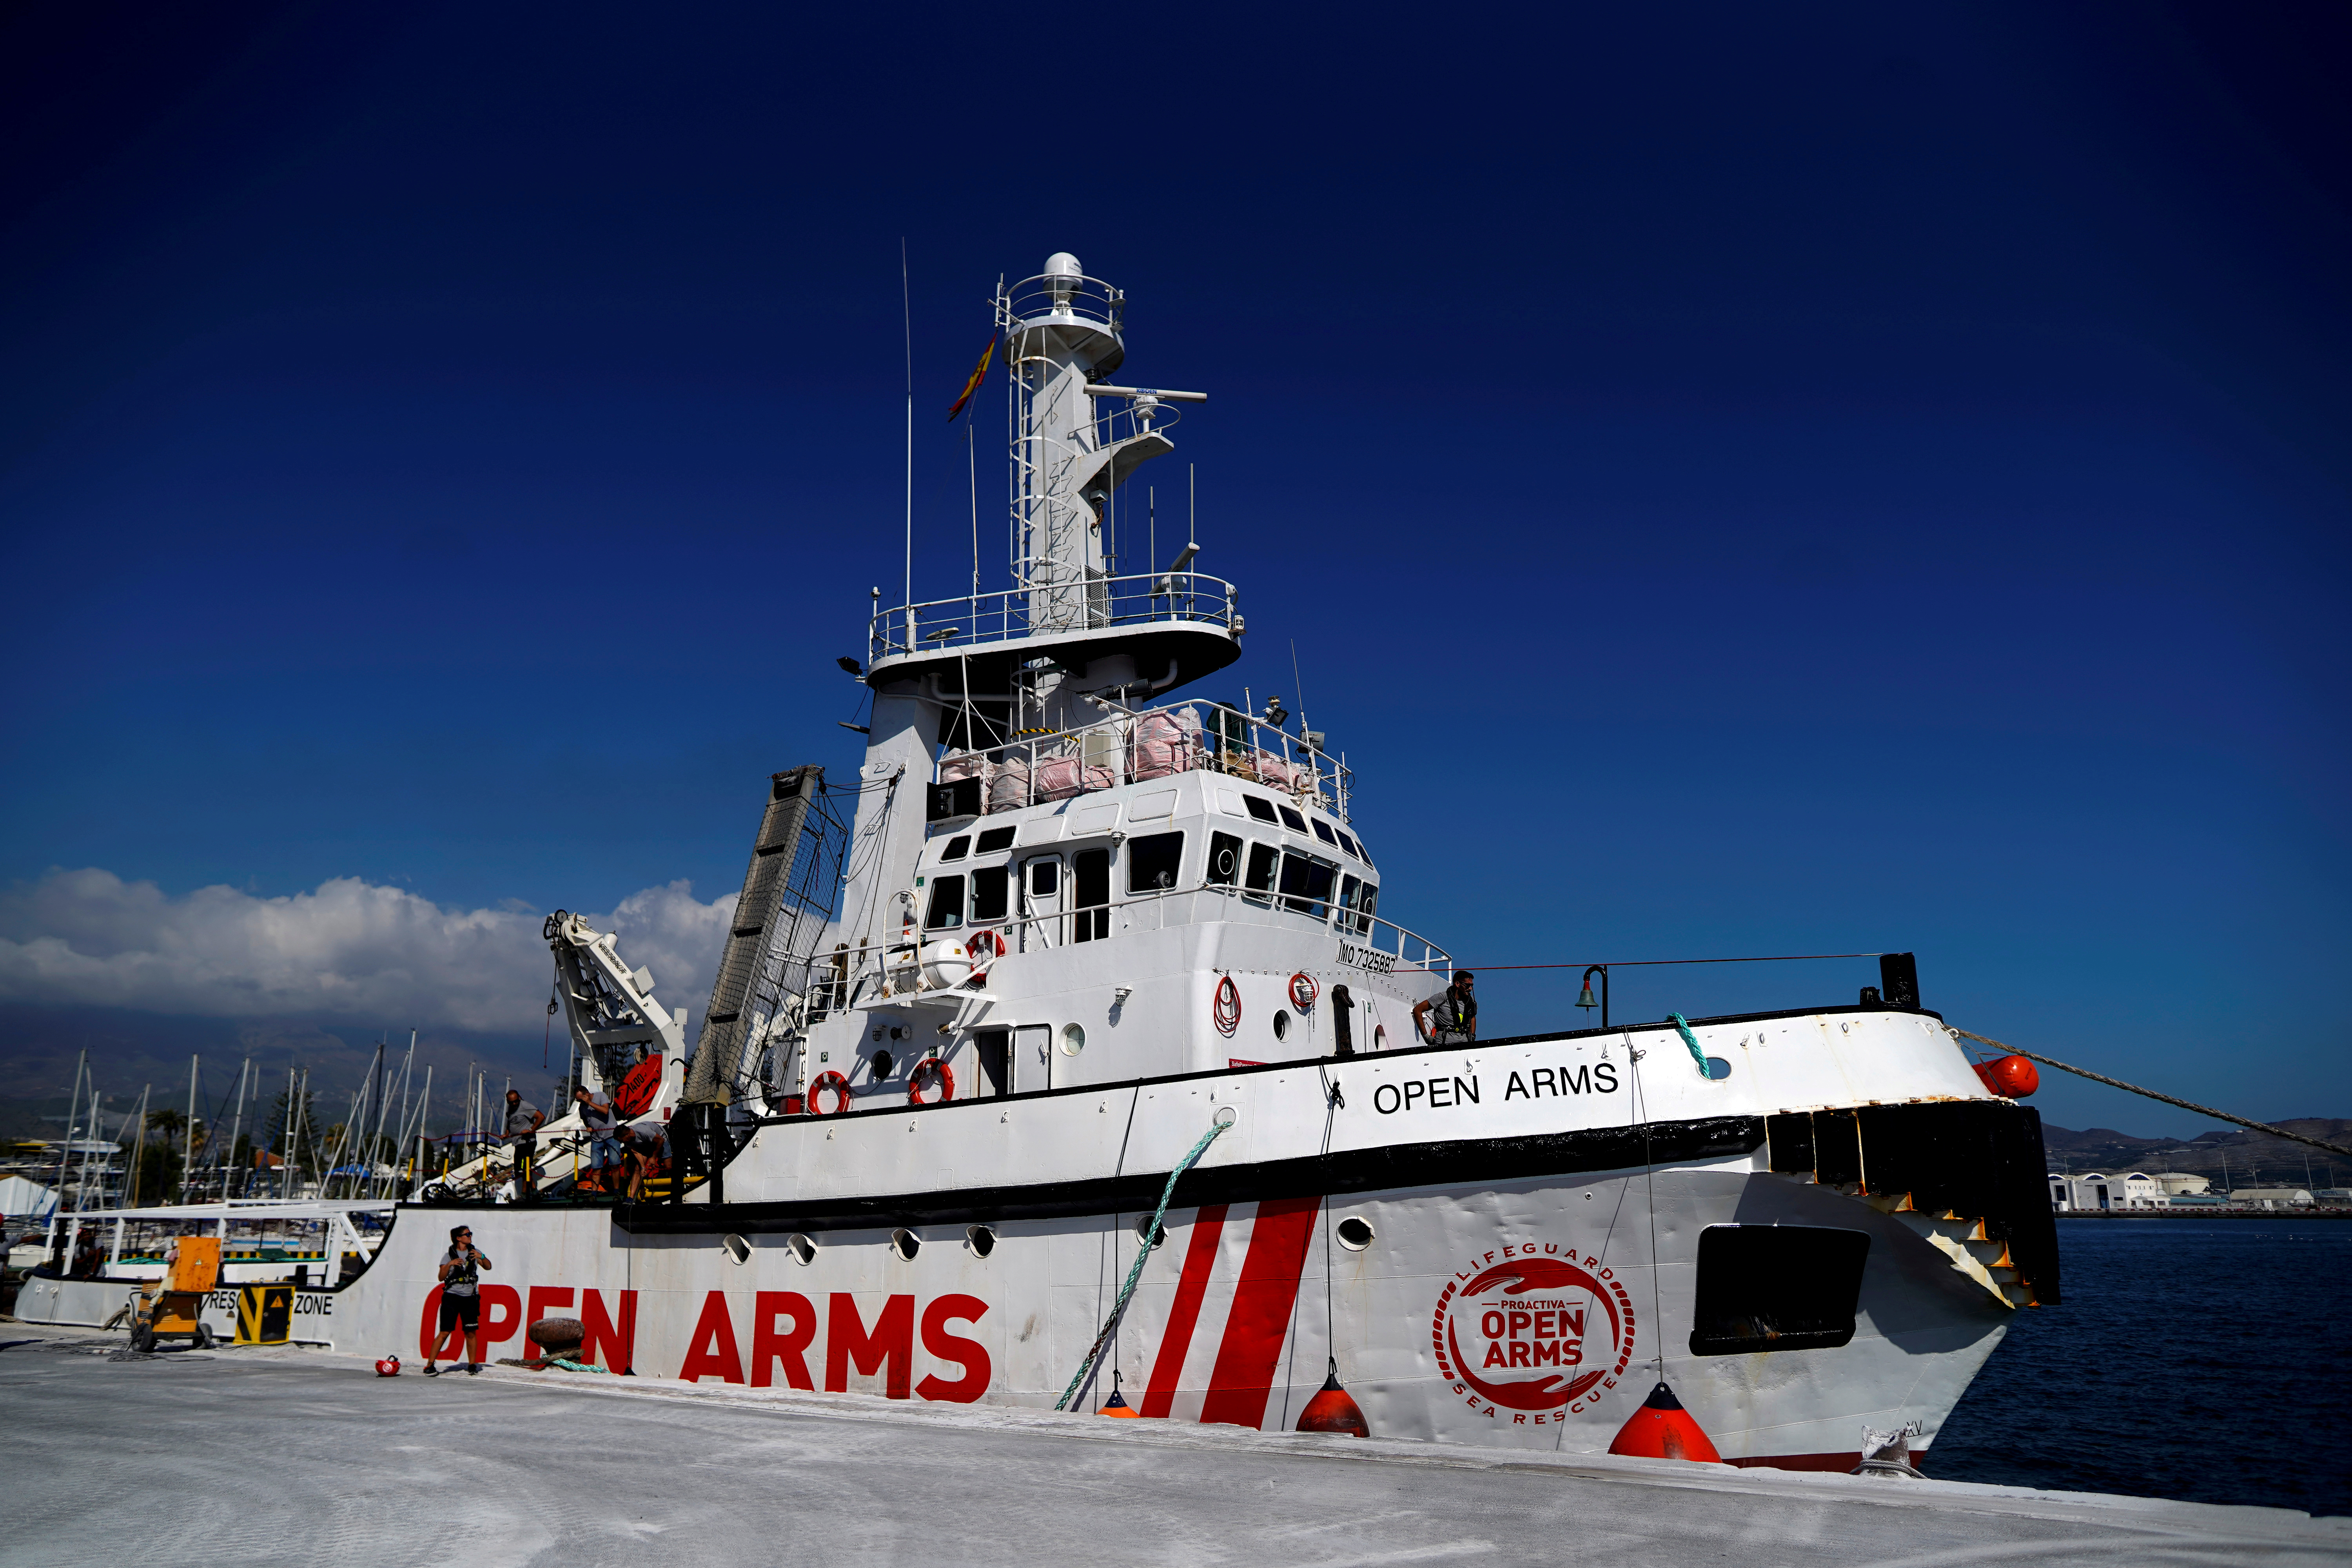 Open Arms pide asilo en embajada española en Malta para 31 menores rescatados